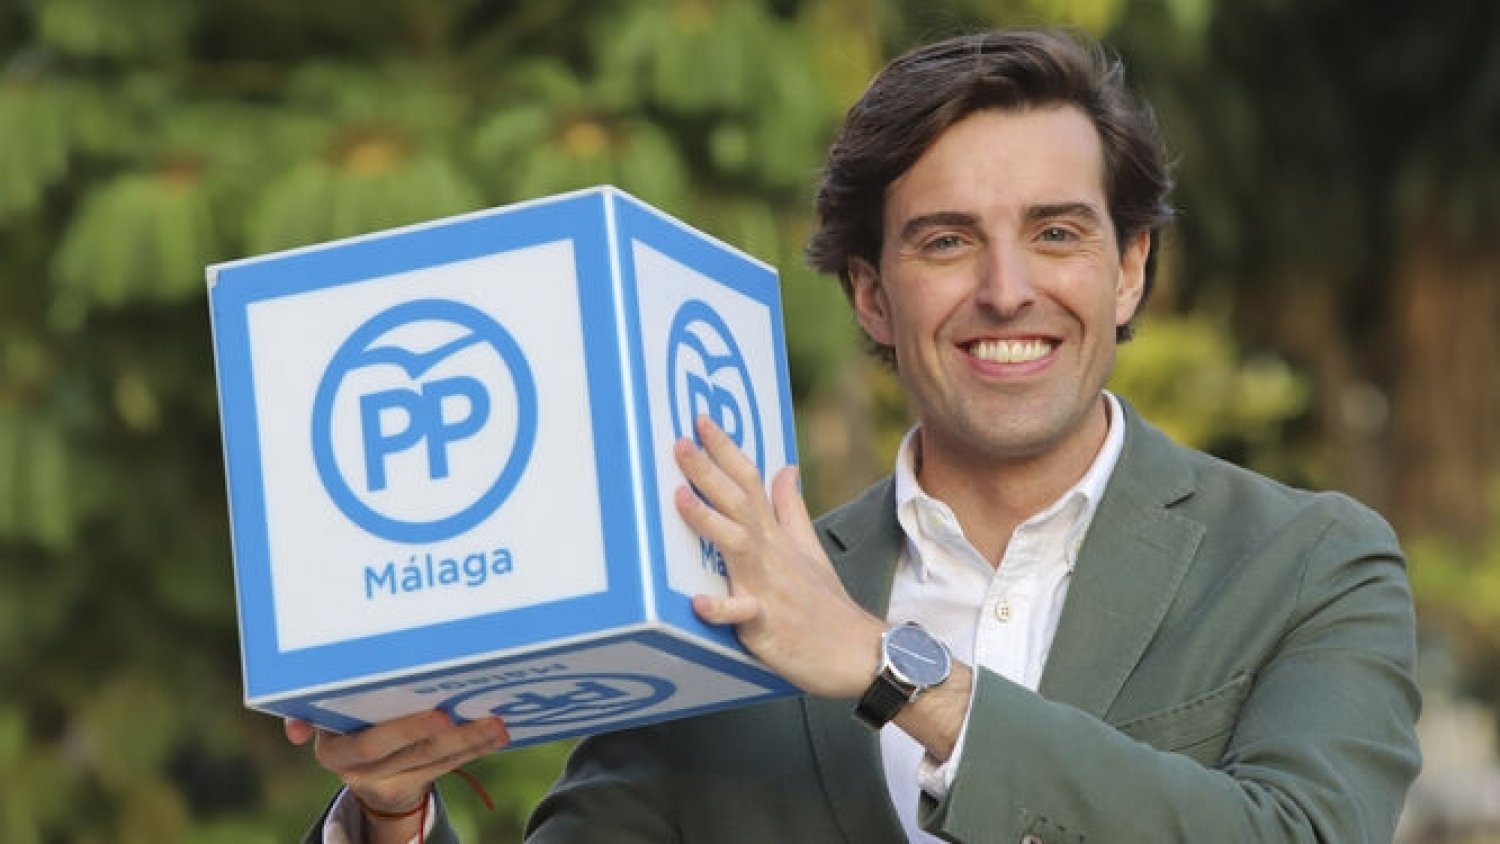 El PP reafirma su contrato con Málaga: “vamos a dar la batalla en defensa del interés general